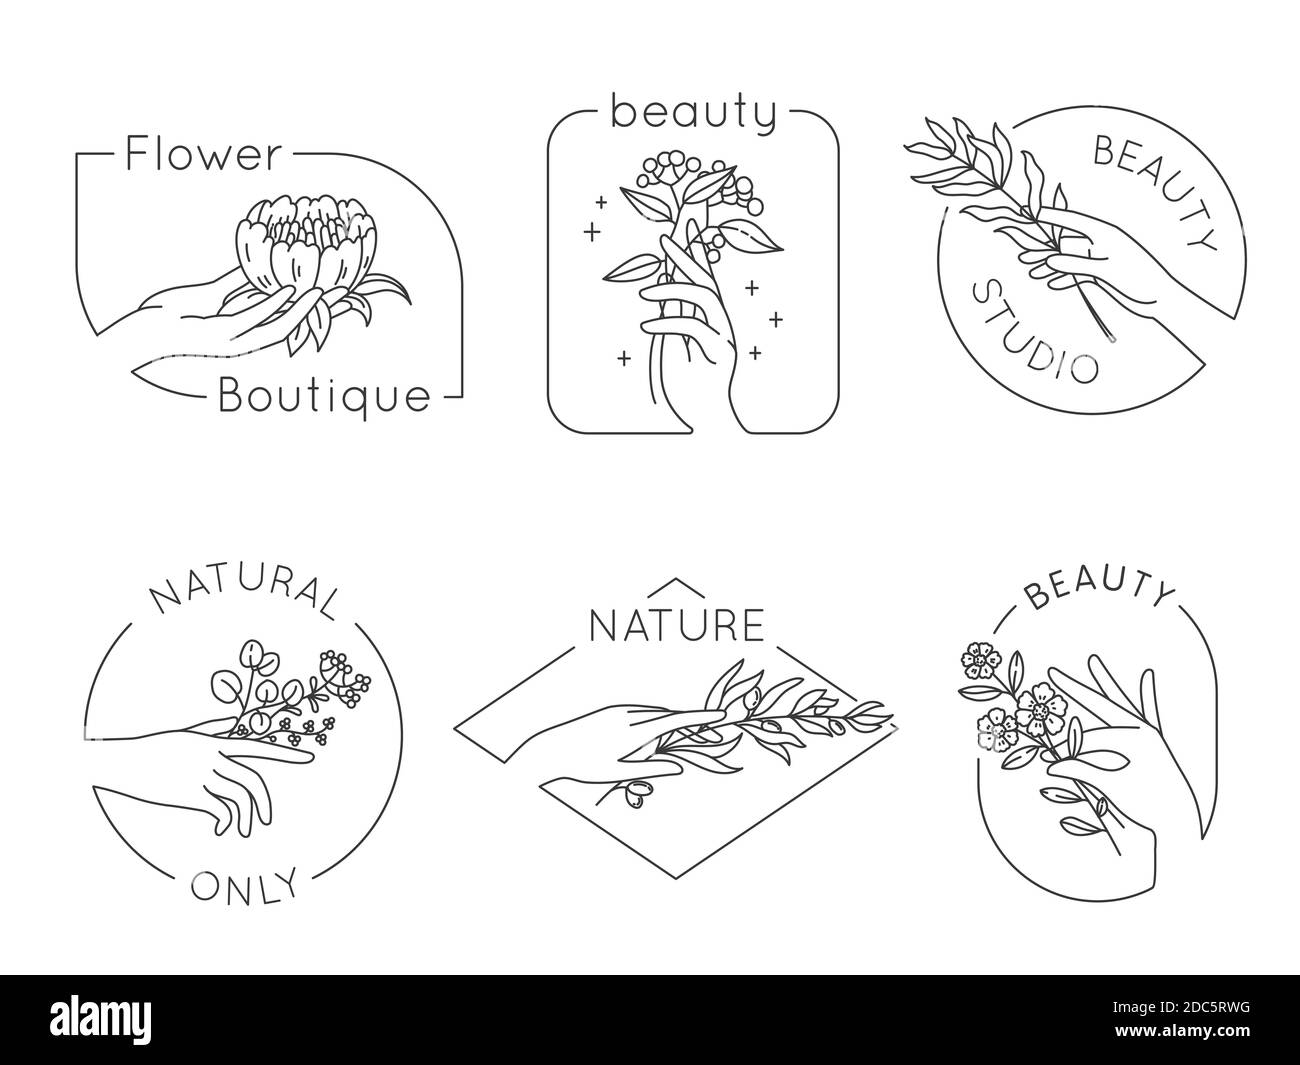 Logo de la main et de la fleur. Salon de beauté floral, spa et logo cosmétique avec les mains des femmes. Emblèmes pour produits naturels faits à la main, ensemble vectoriel Illustration de Vecteur